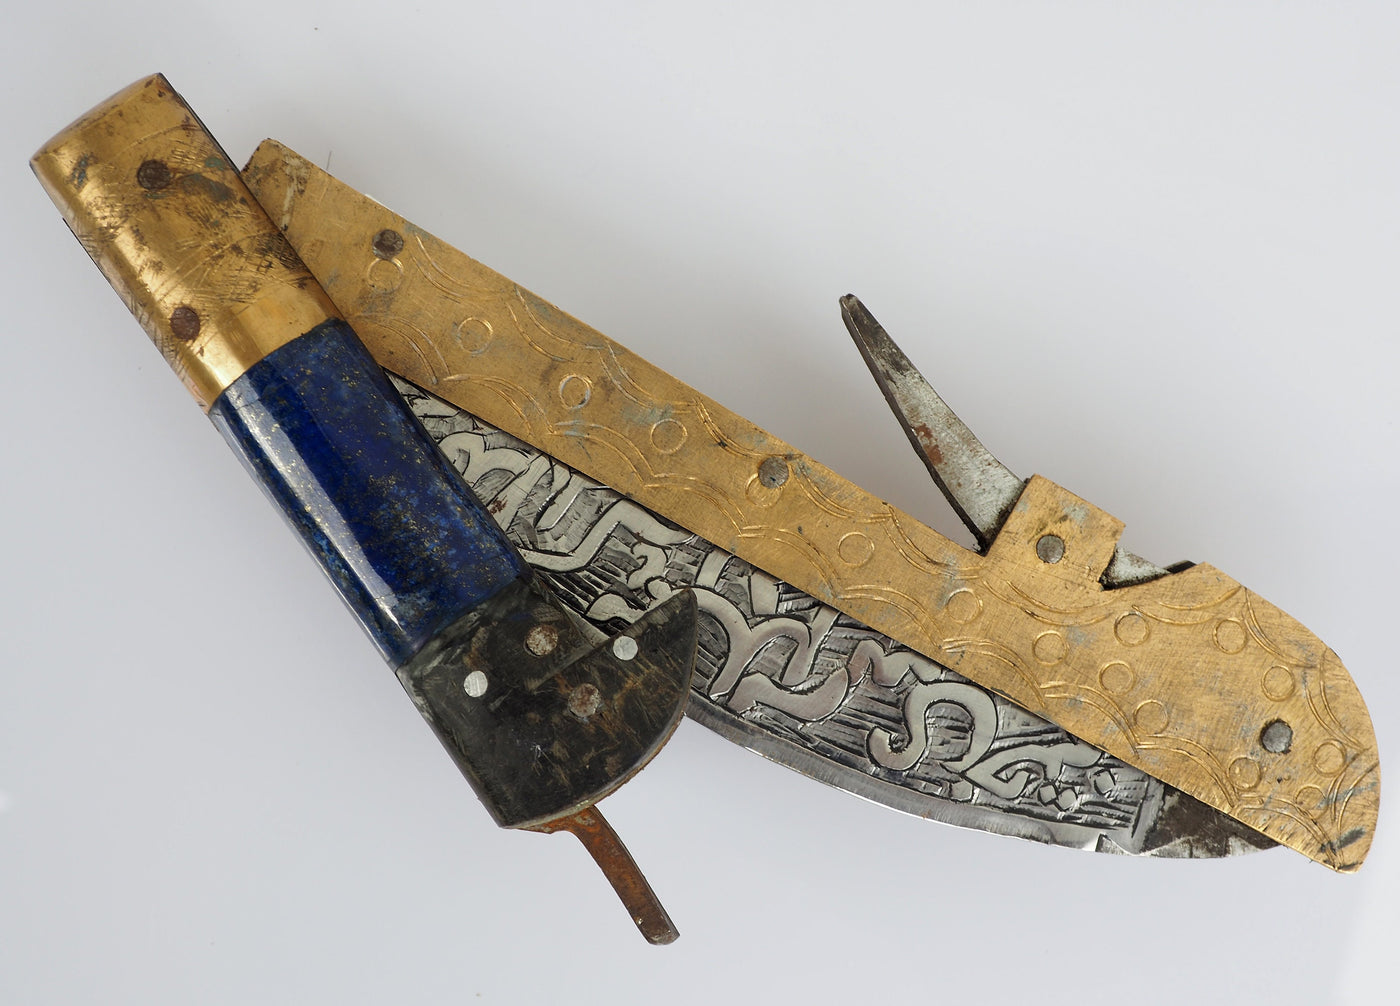 32 cm Messer Dolch choora dagger lohar Khybe messer Klappsense klappmesser Sense mit Lapis Lazuli Griff  aus Afghanistan Pakistan  Nr:21/E  Orientsbazar   